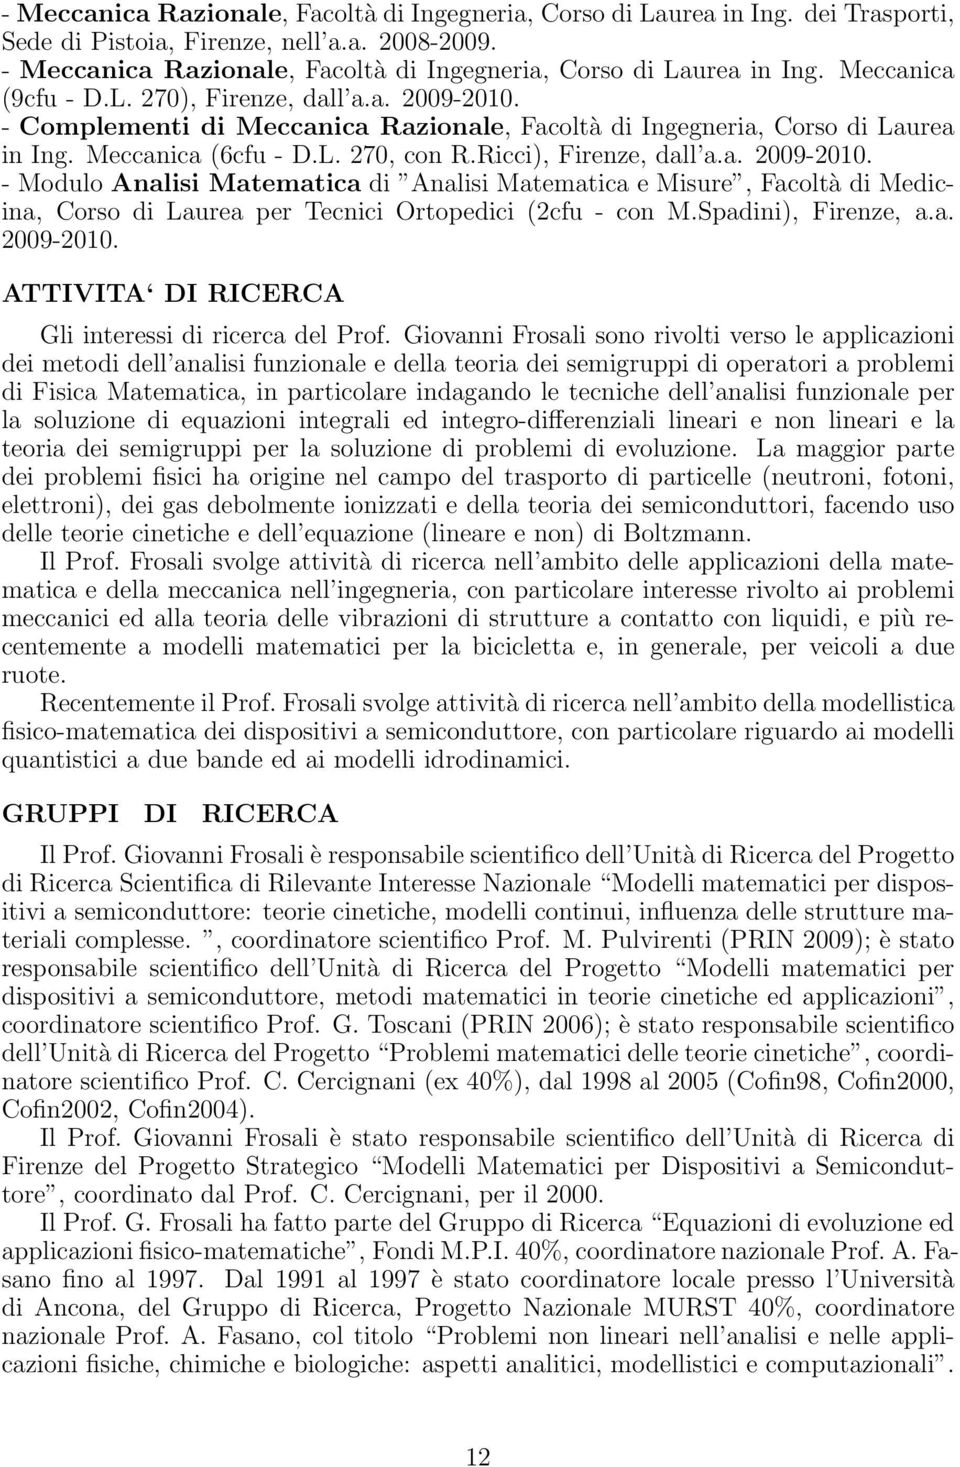 - Complementi di Meccanica Razionale, Facoltà di Ingegneria, Corso di Laurea in Ing. Meccanica (6cfu - D.L. 270, con R.Ricci), Firenze, dall a.a. 2009-2010.